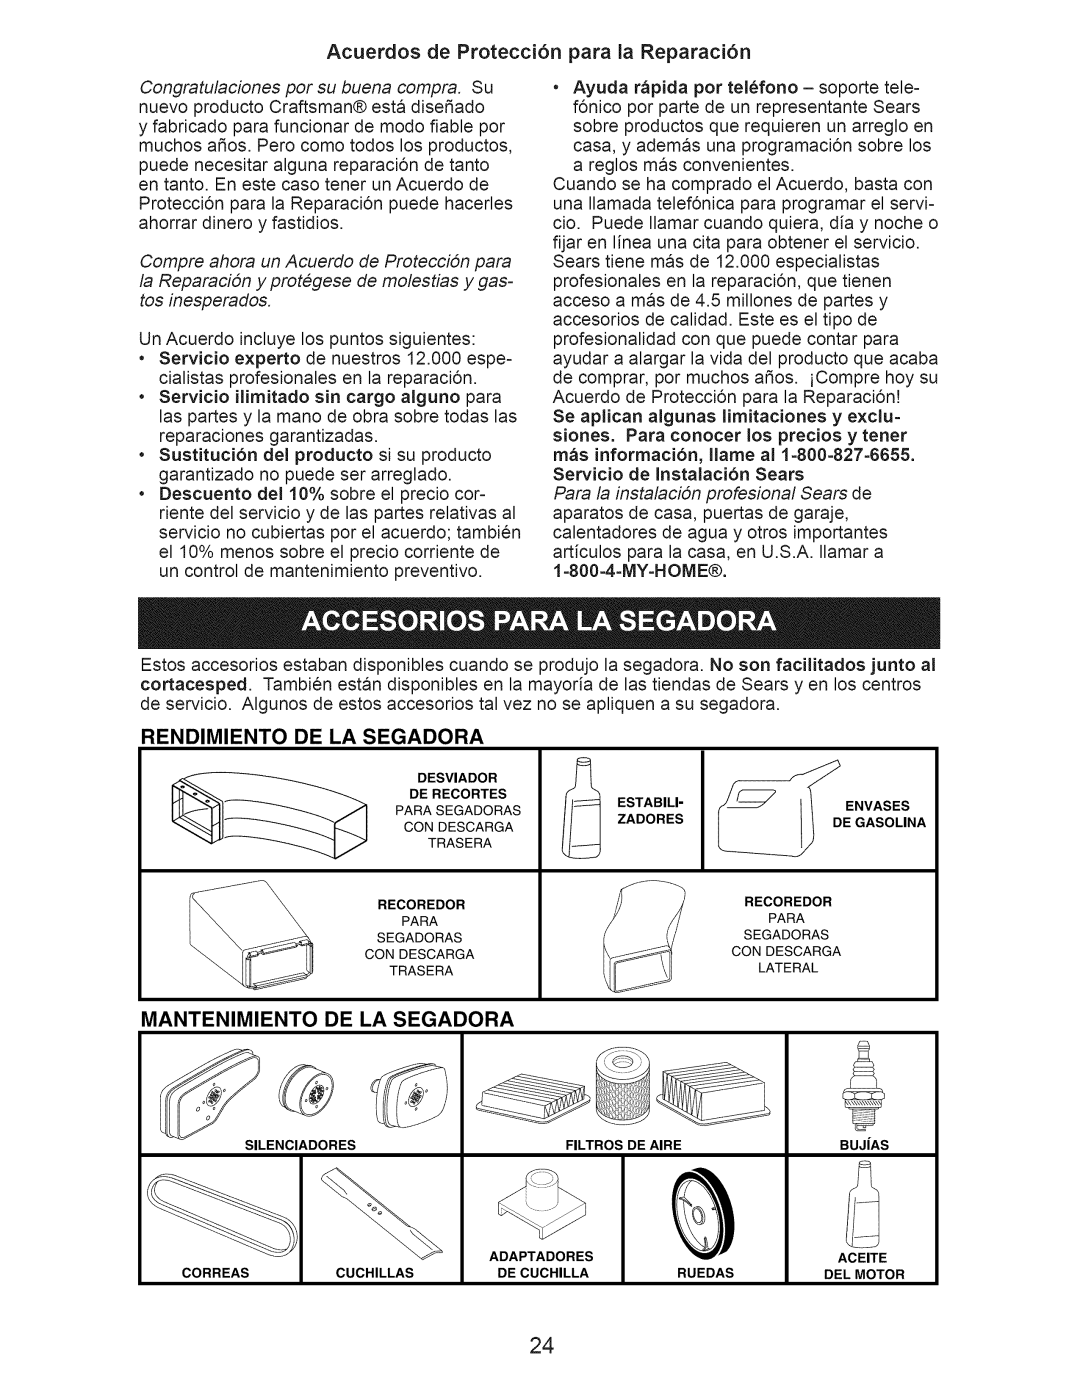 Craftsman 917.374360 Acuerdos de Protecci6n para la Reparaci6n, Rendimiento De La Segadora, Mantenimiento De La Segadora 